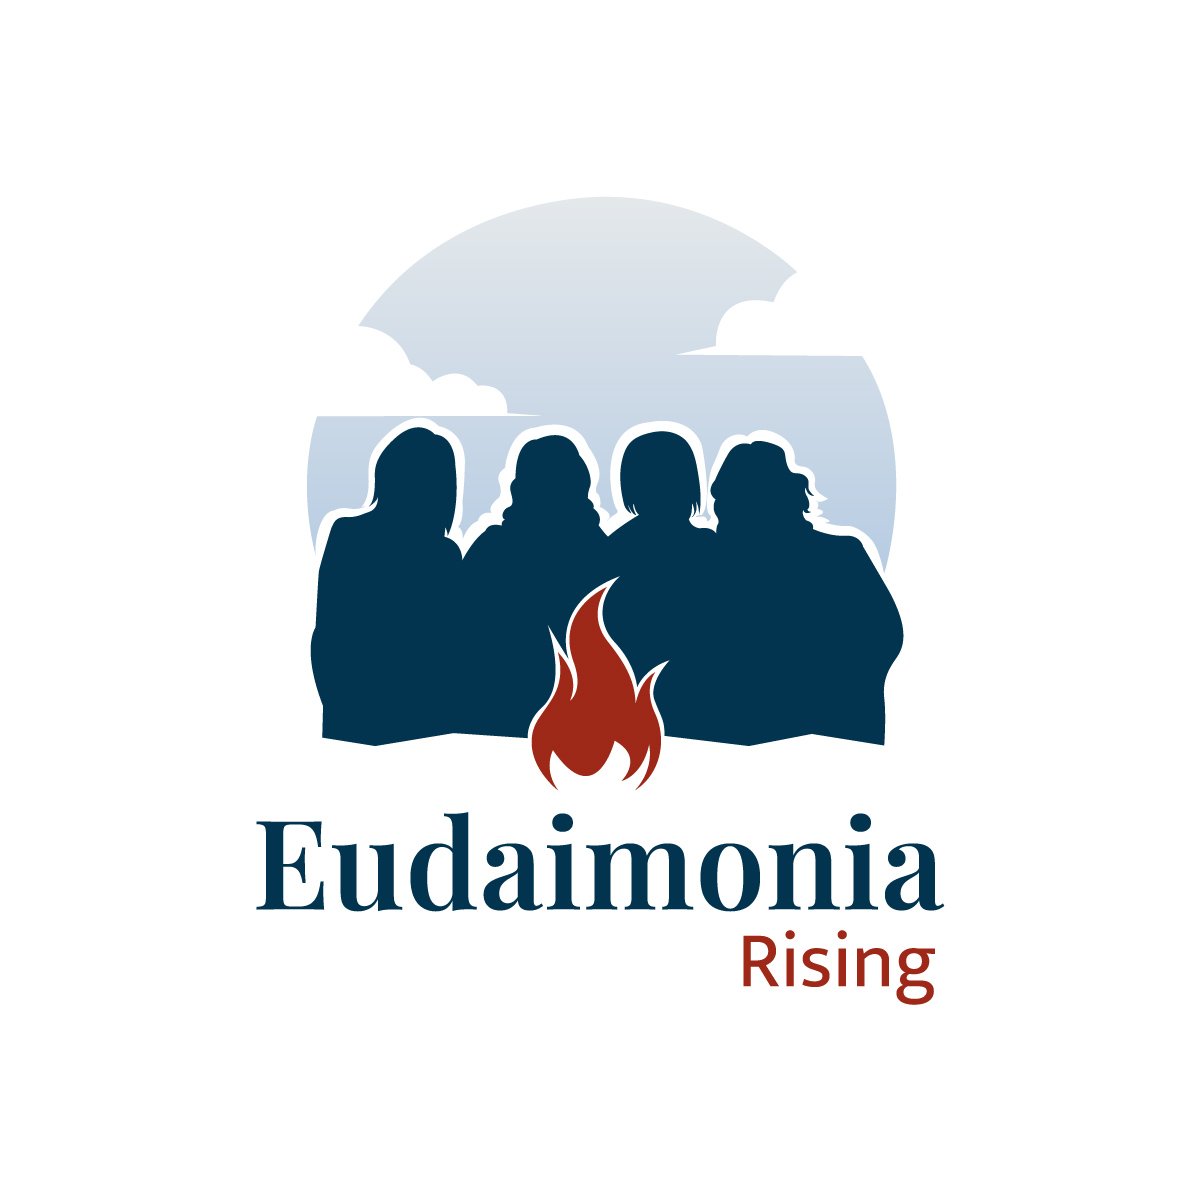 New Brand: Eudaimonia Rising